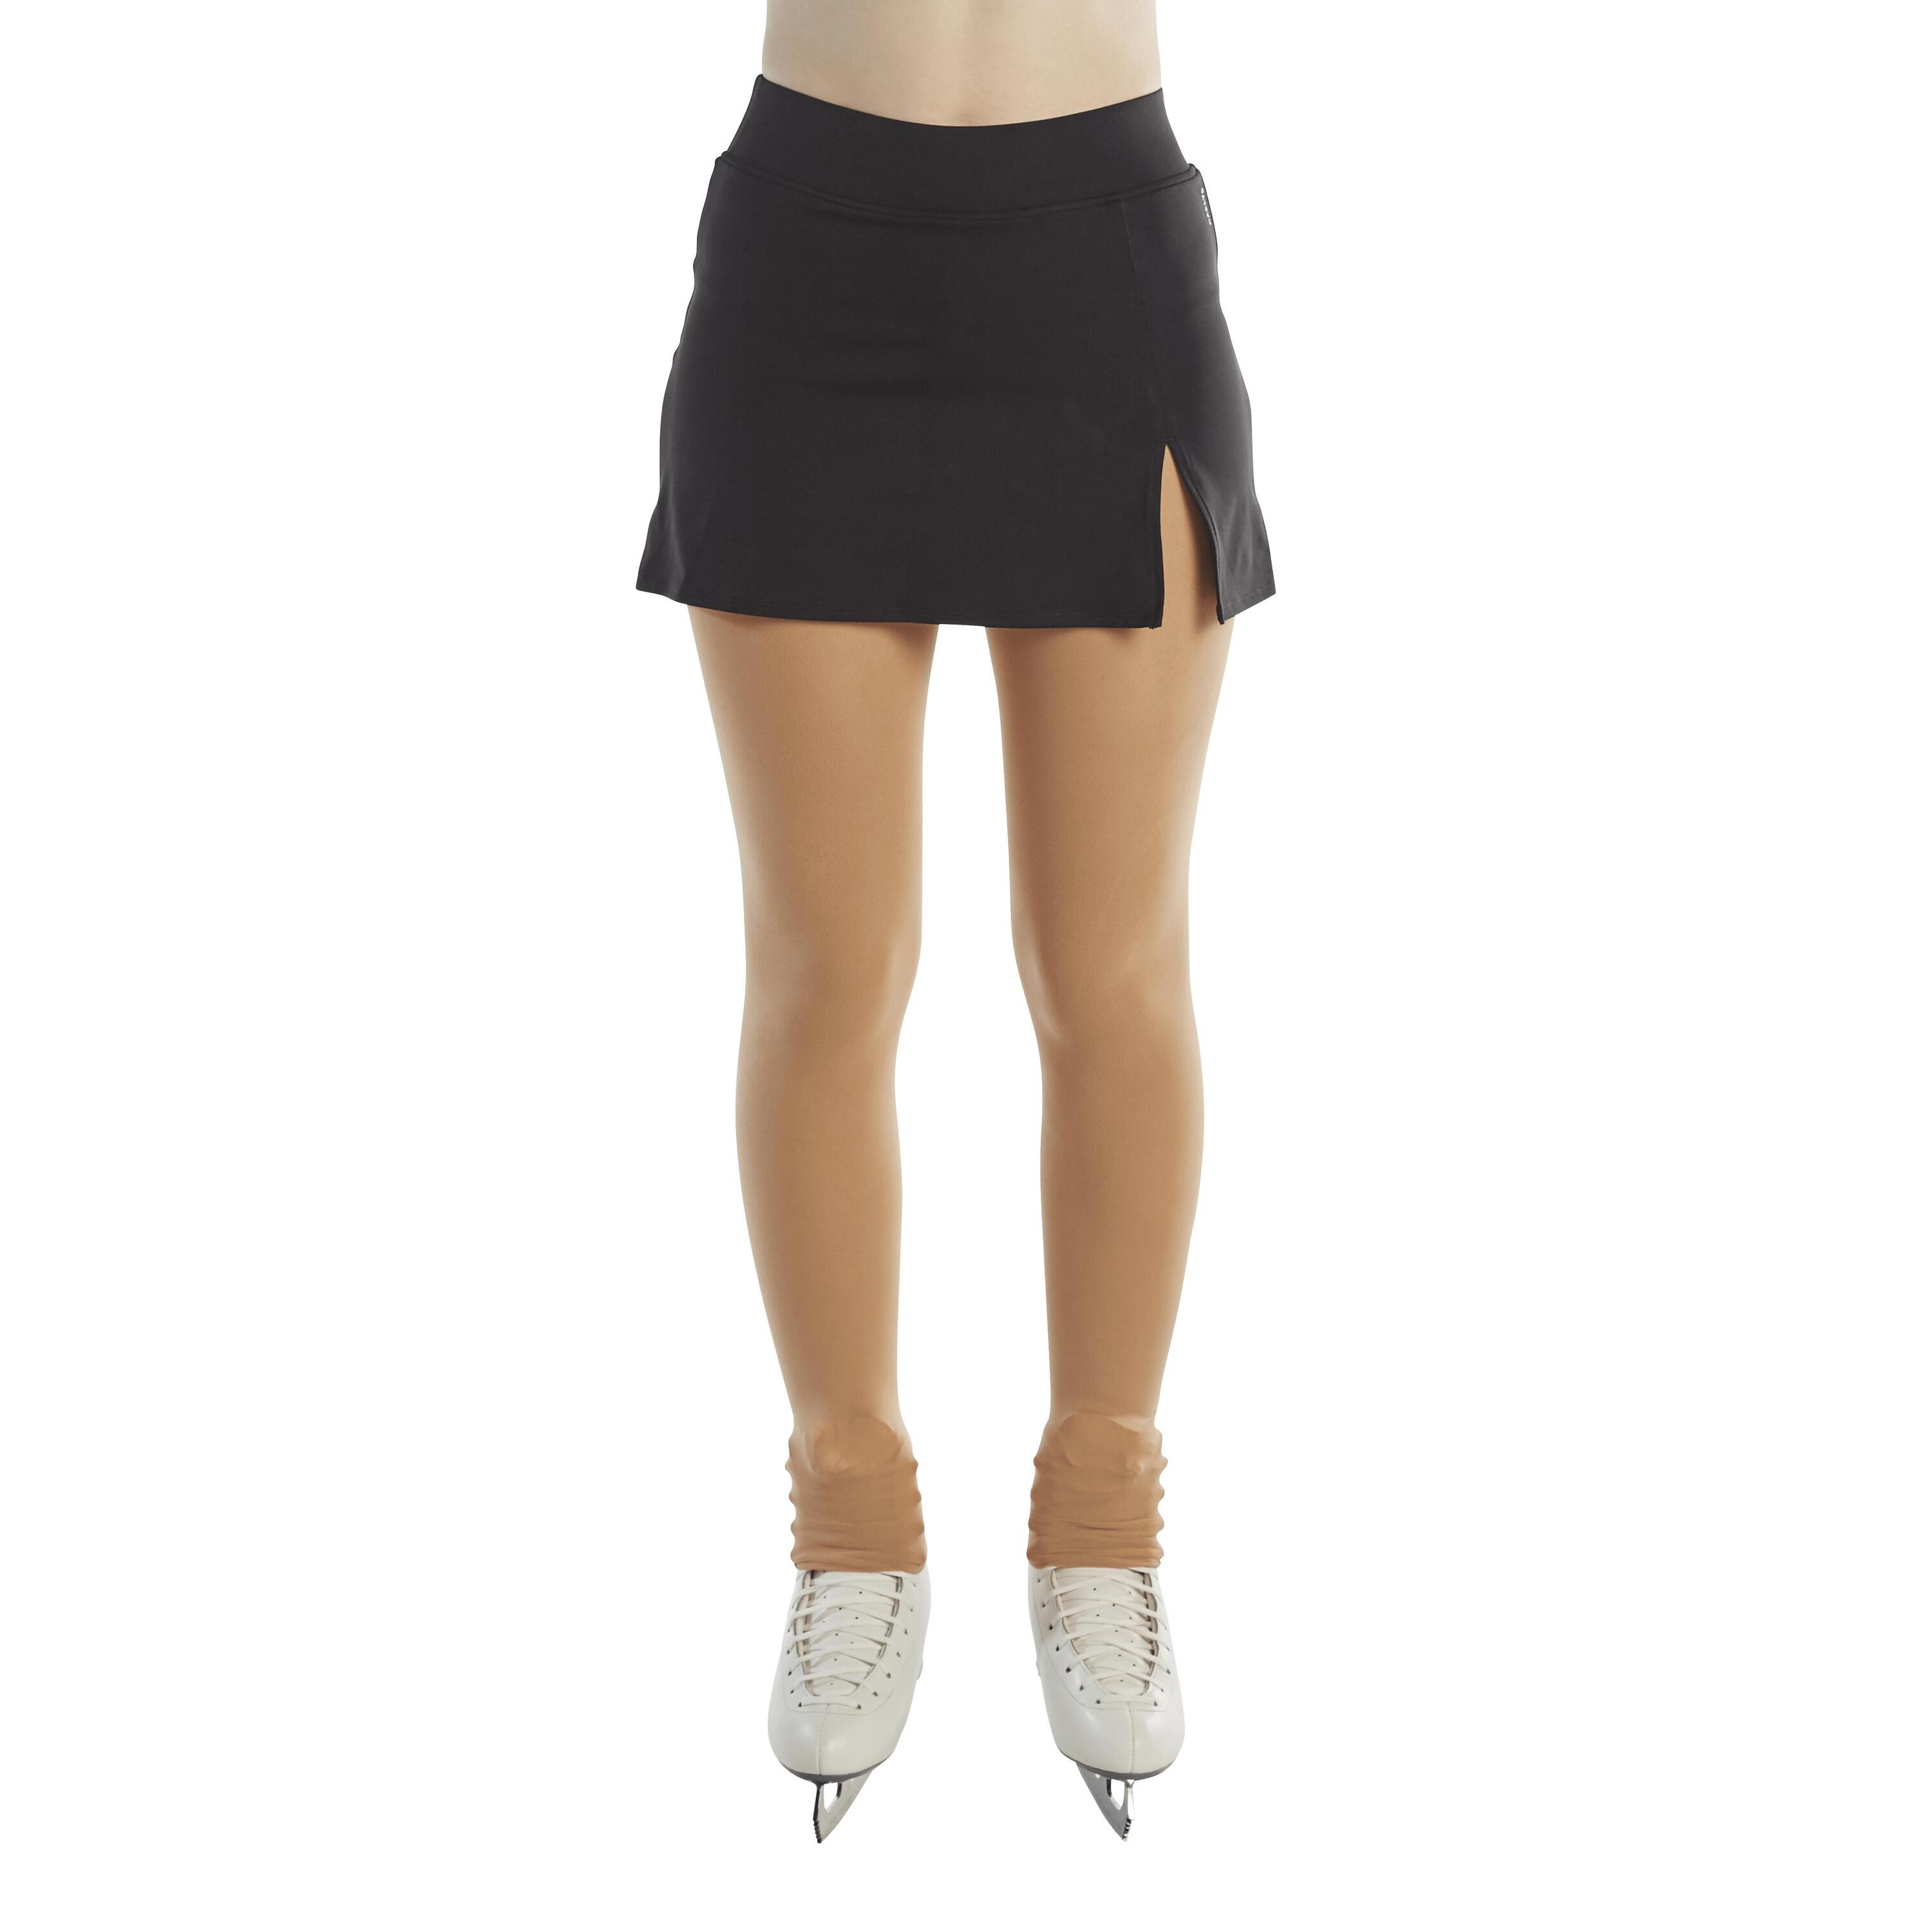 Adult Figure Skating Skirt - Black 2/6